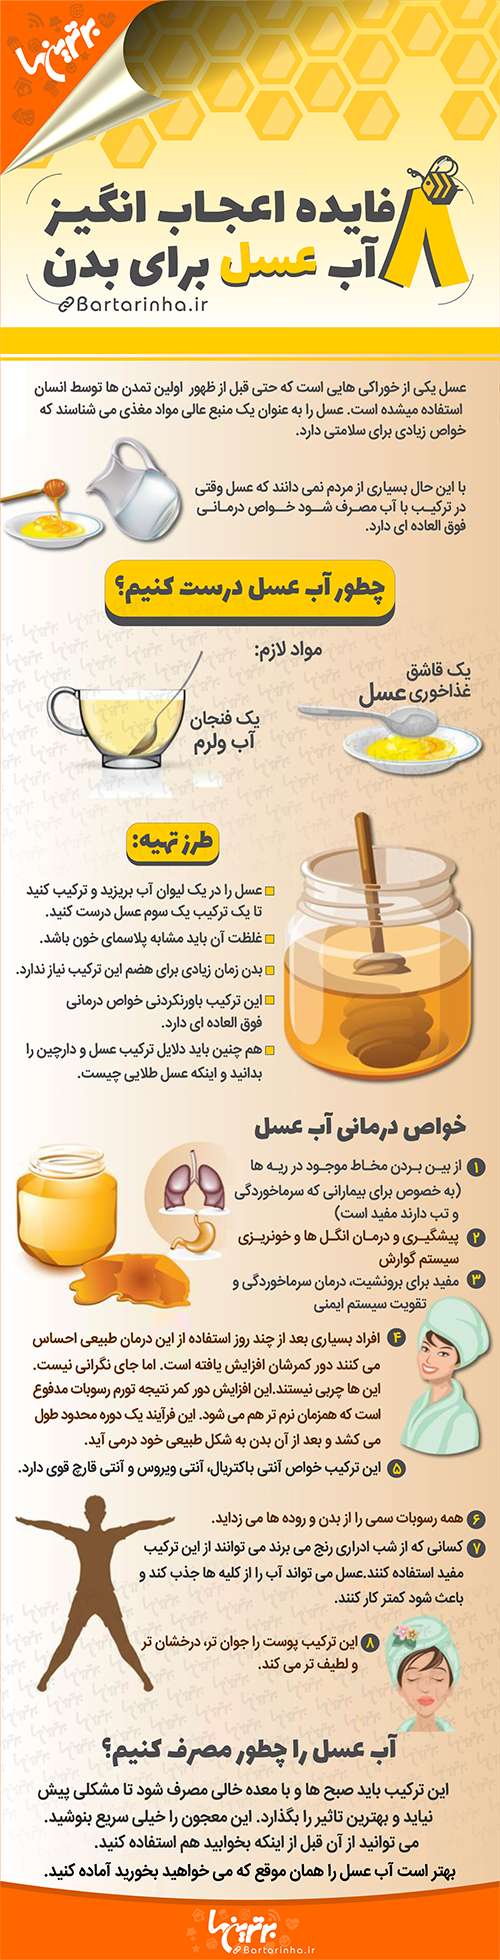 اینفوگرافی؛ ۸ فایده اعجاب انگیز آب عسل برای بدن